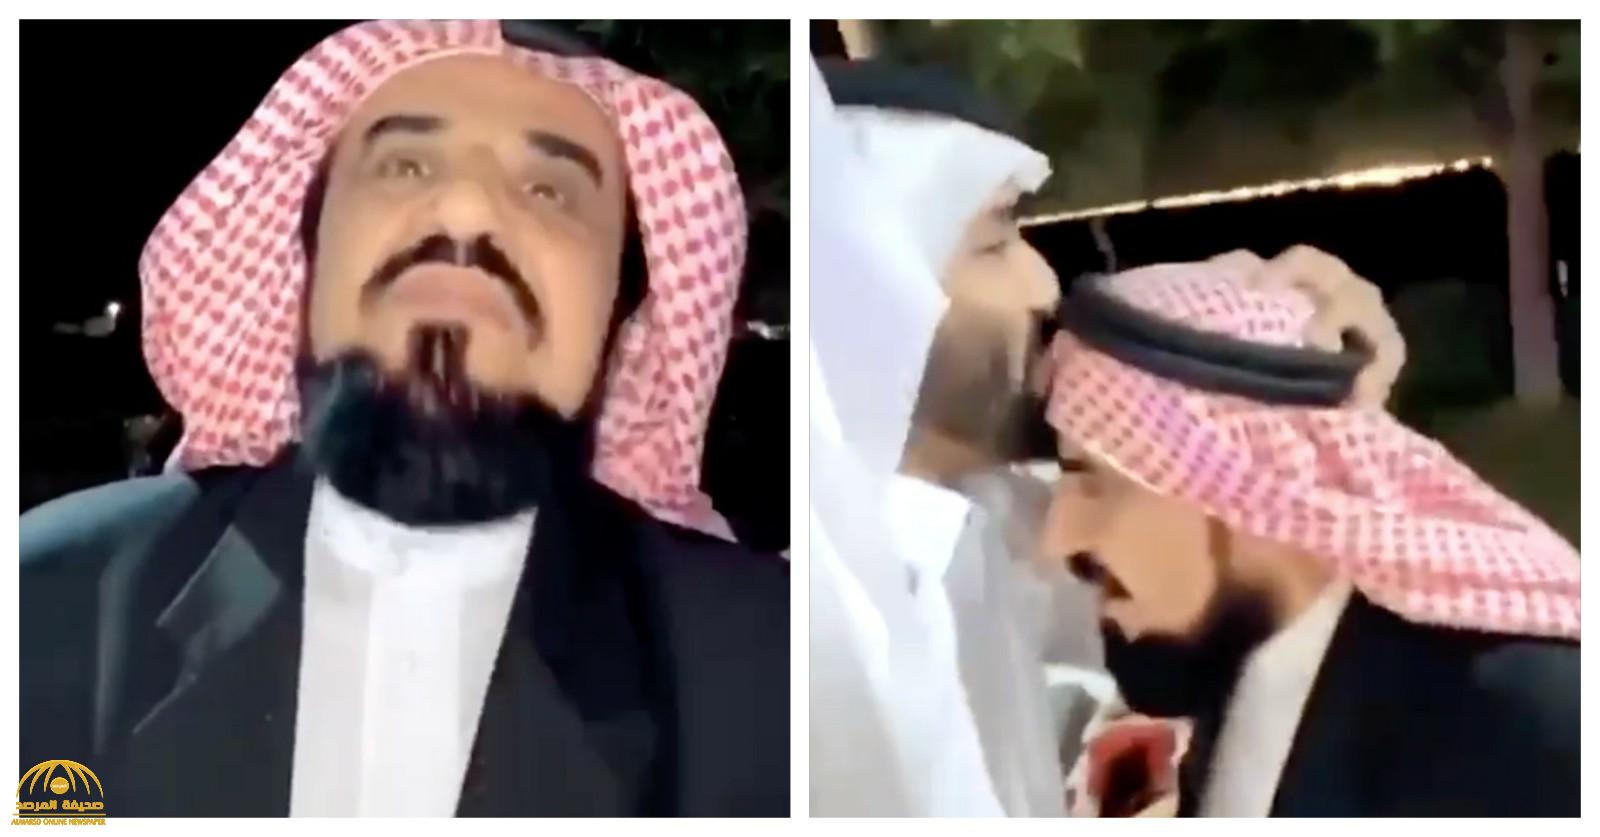 شاهد: رجل أعمال يُهدي ابنته  لمشهور سناب "عبد الرحمن المطيري" بعدما تفاجأ بعدم زواجه !